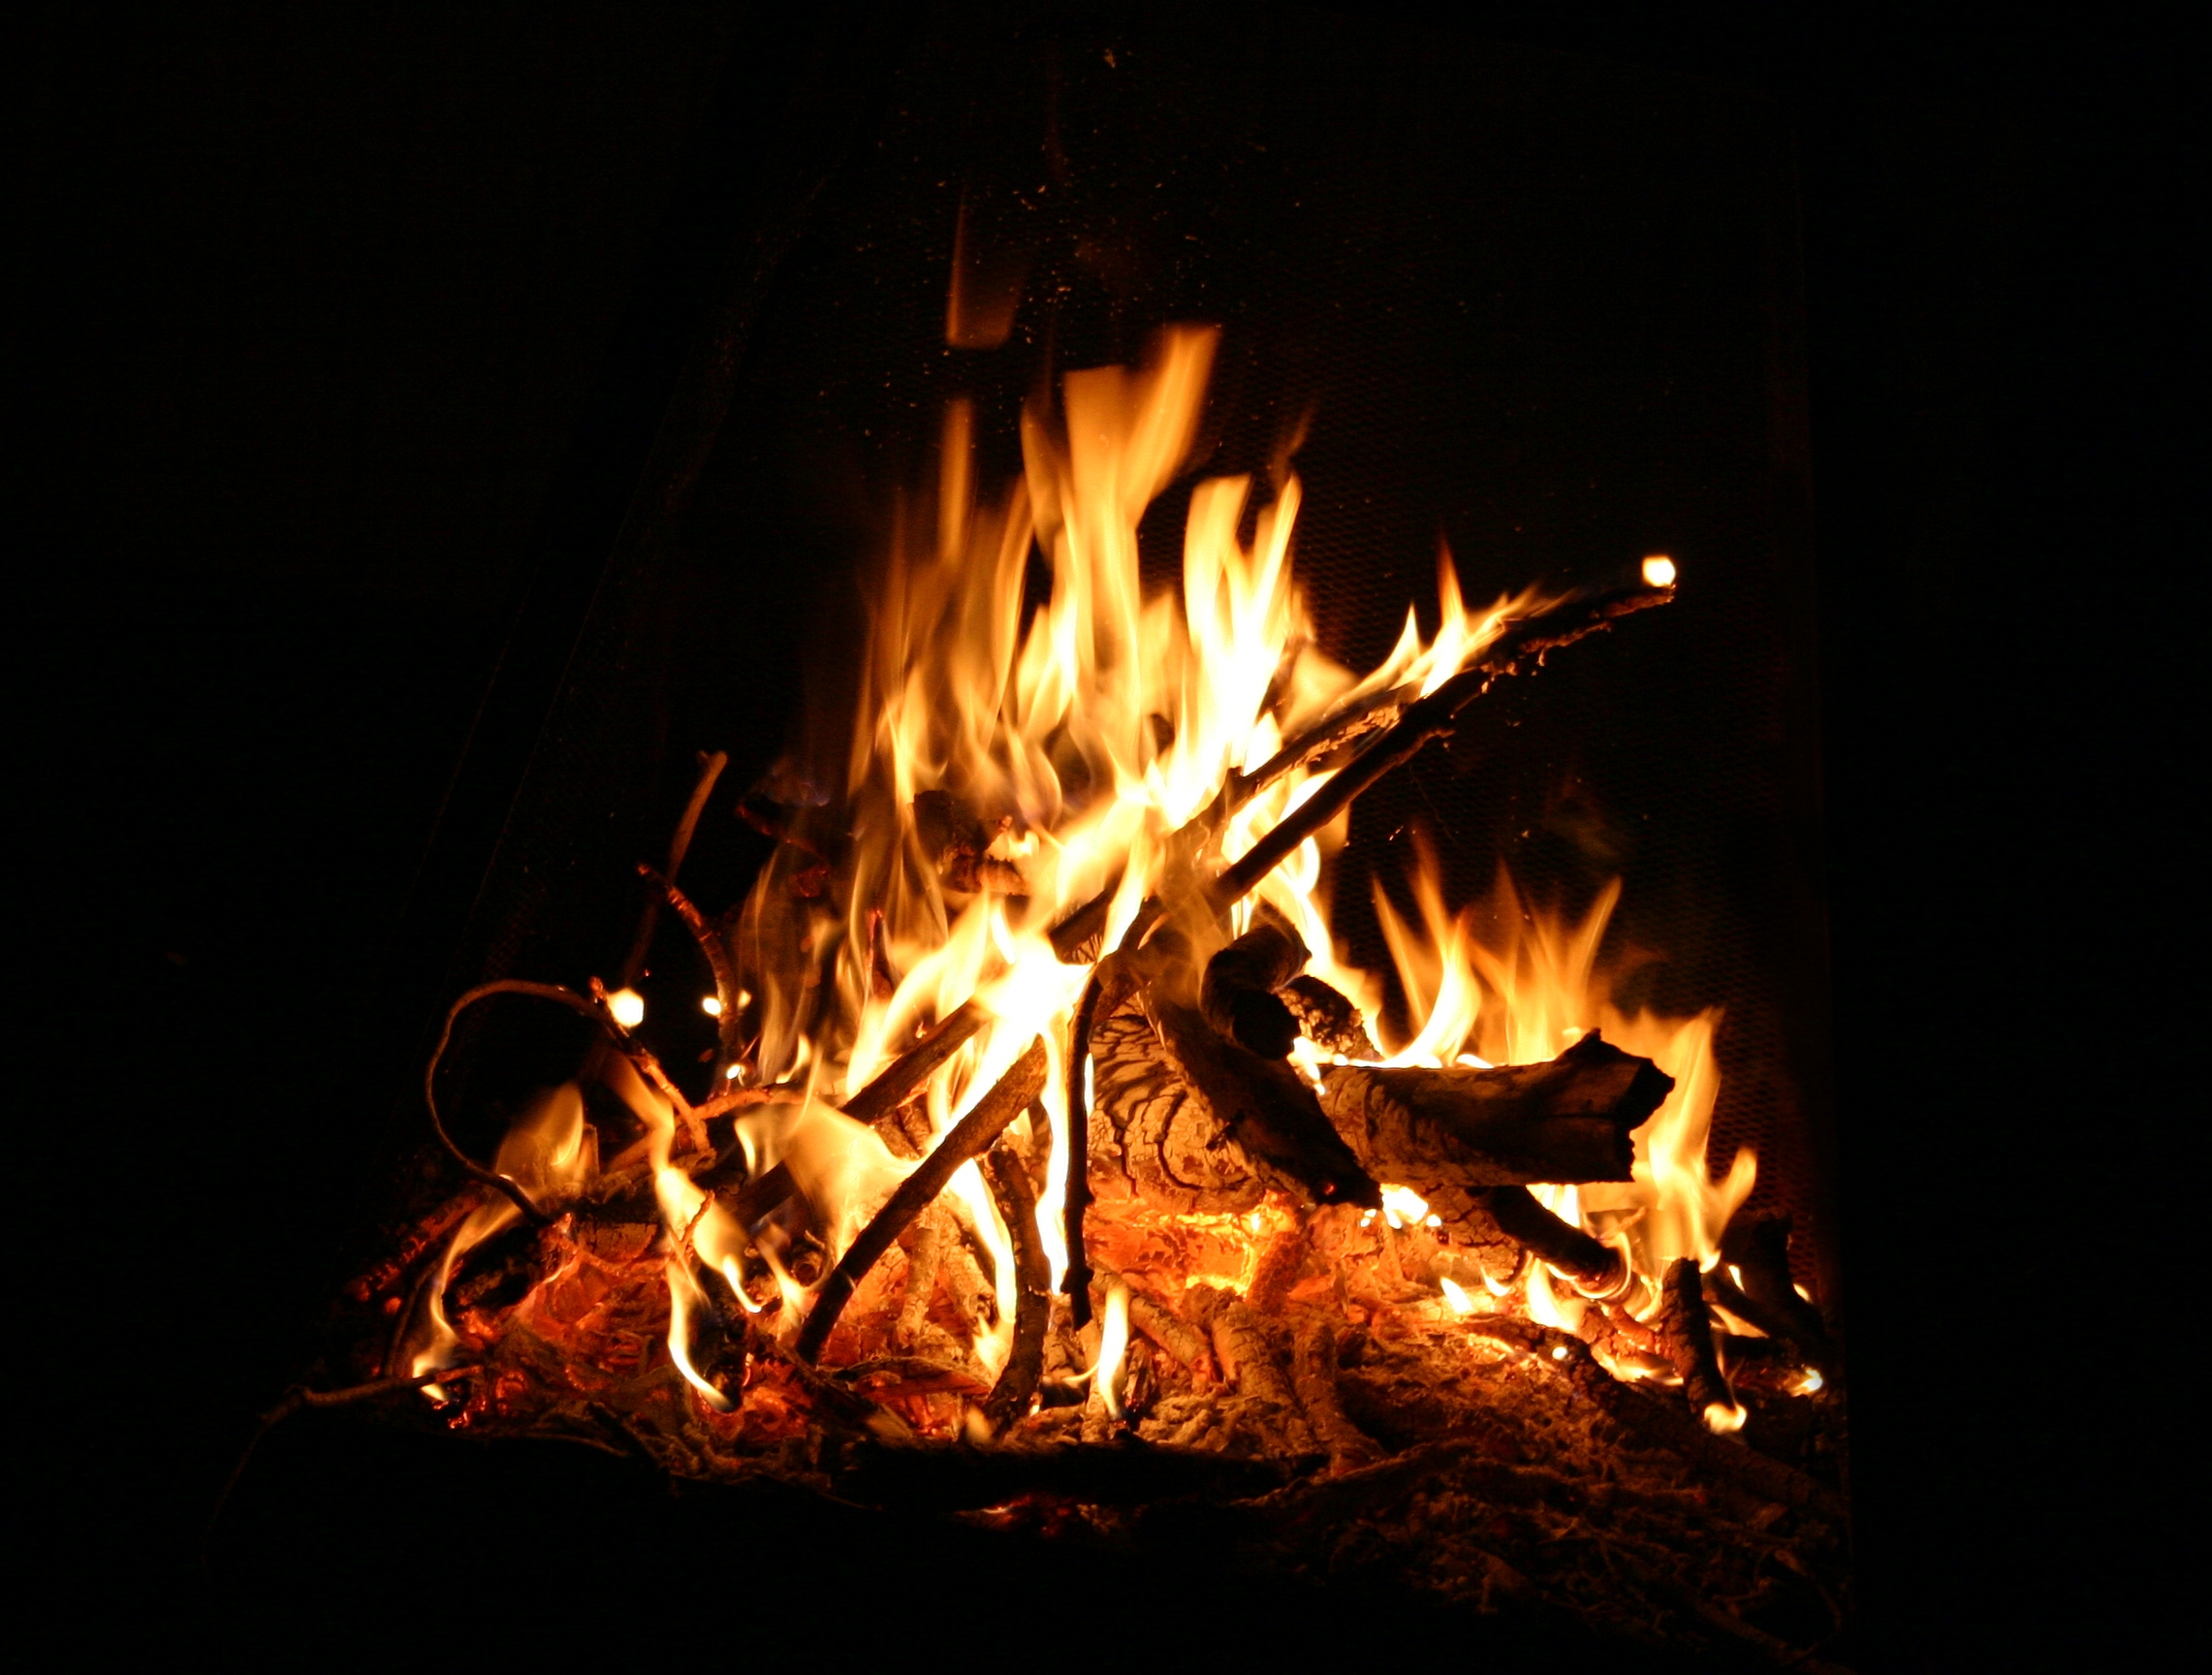 Campfire 3 .jpg